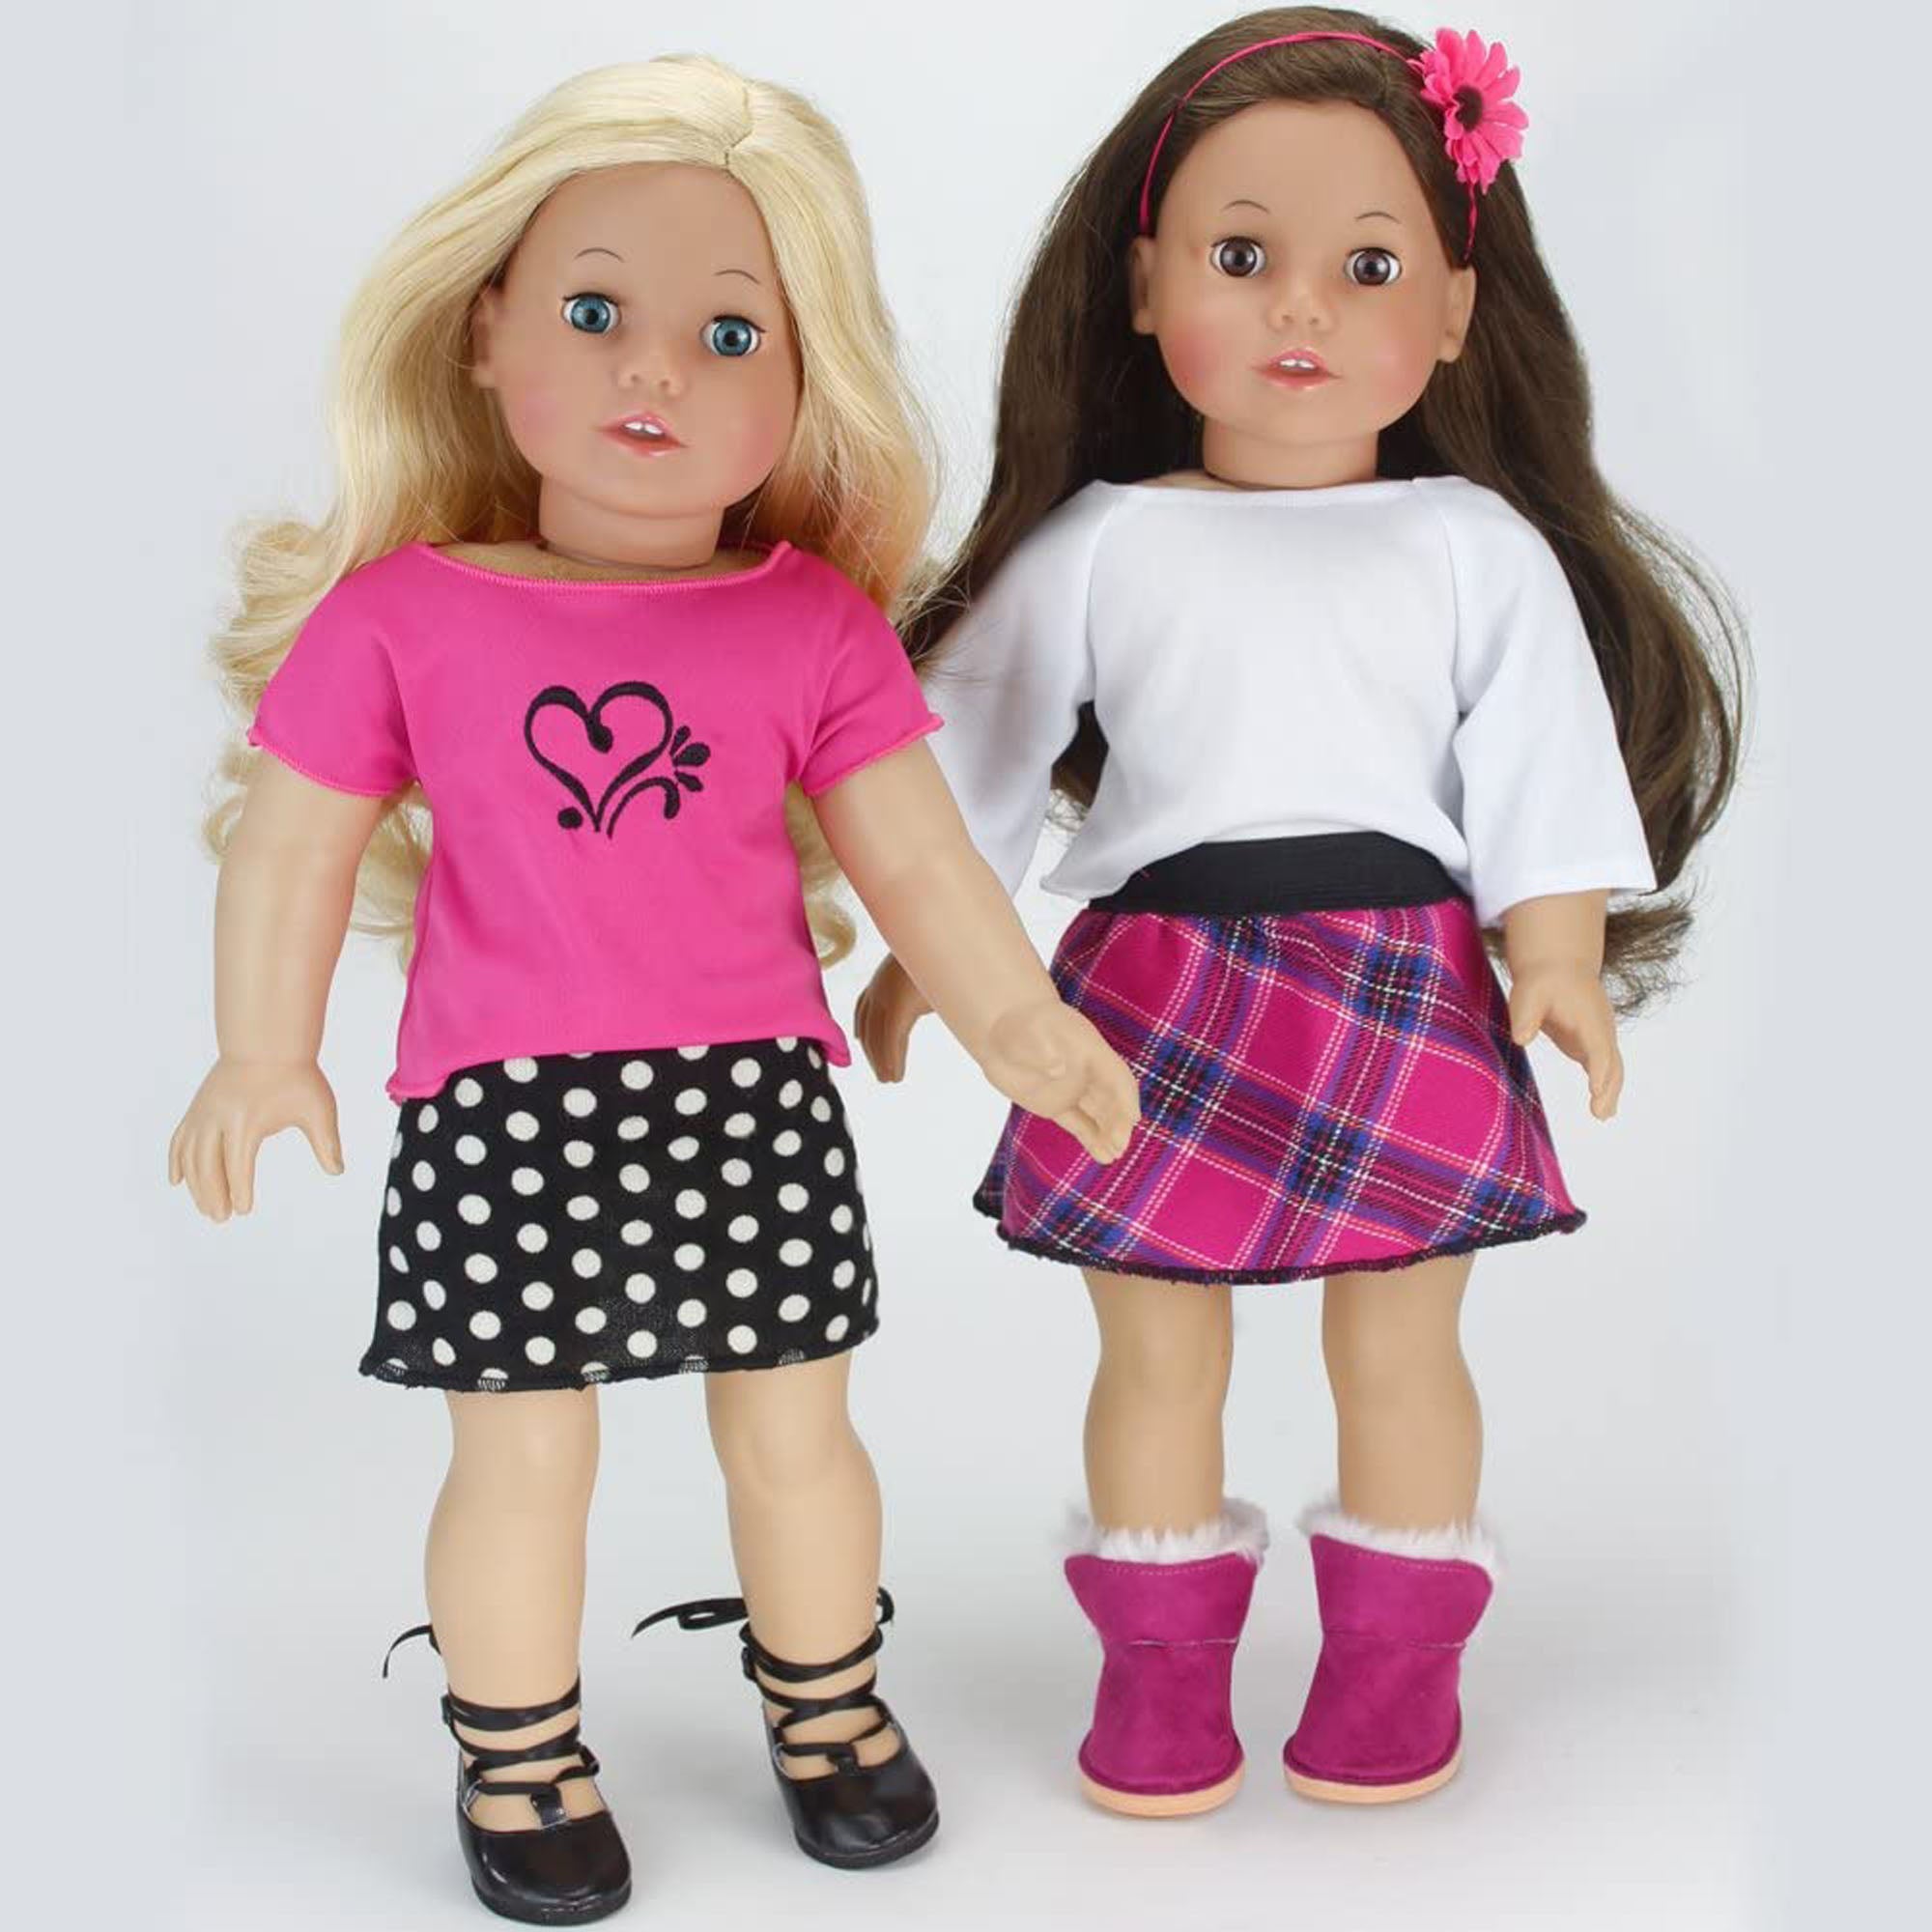 Sophia's - 18" Doll - Price Conscious Amazon Spring Set - Pink